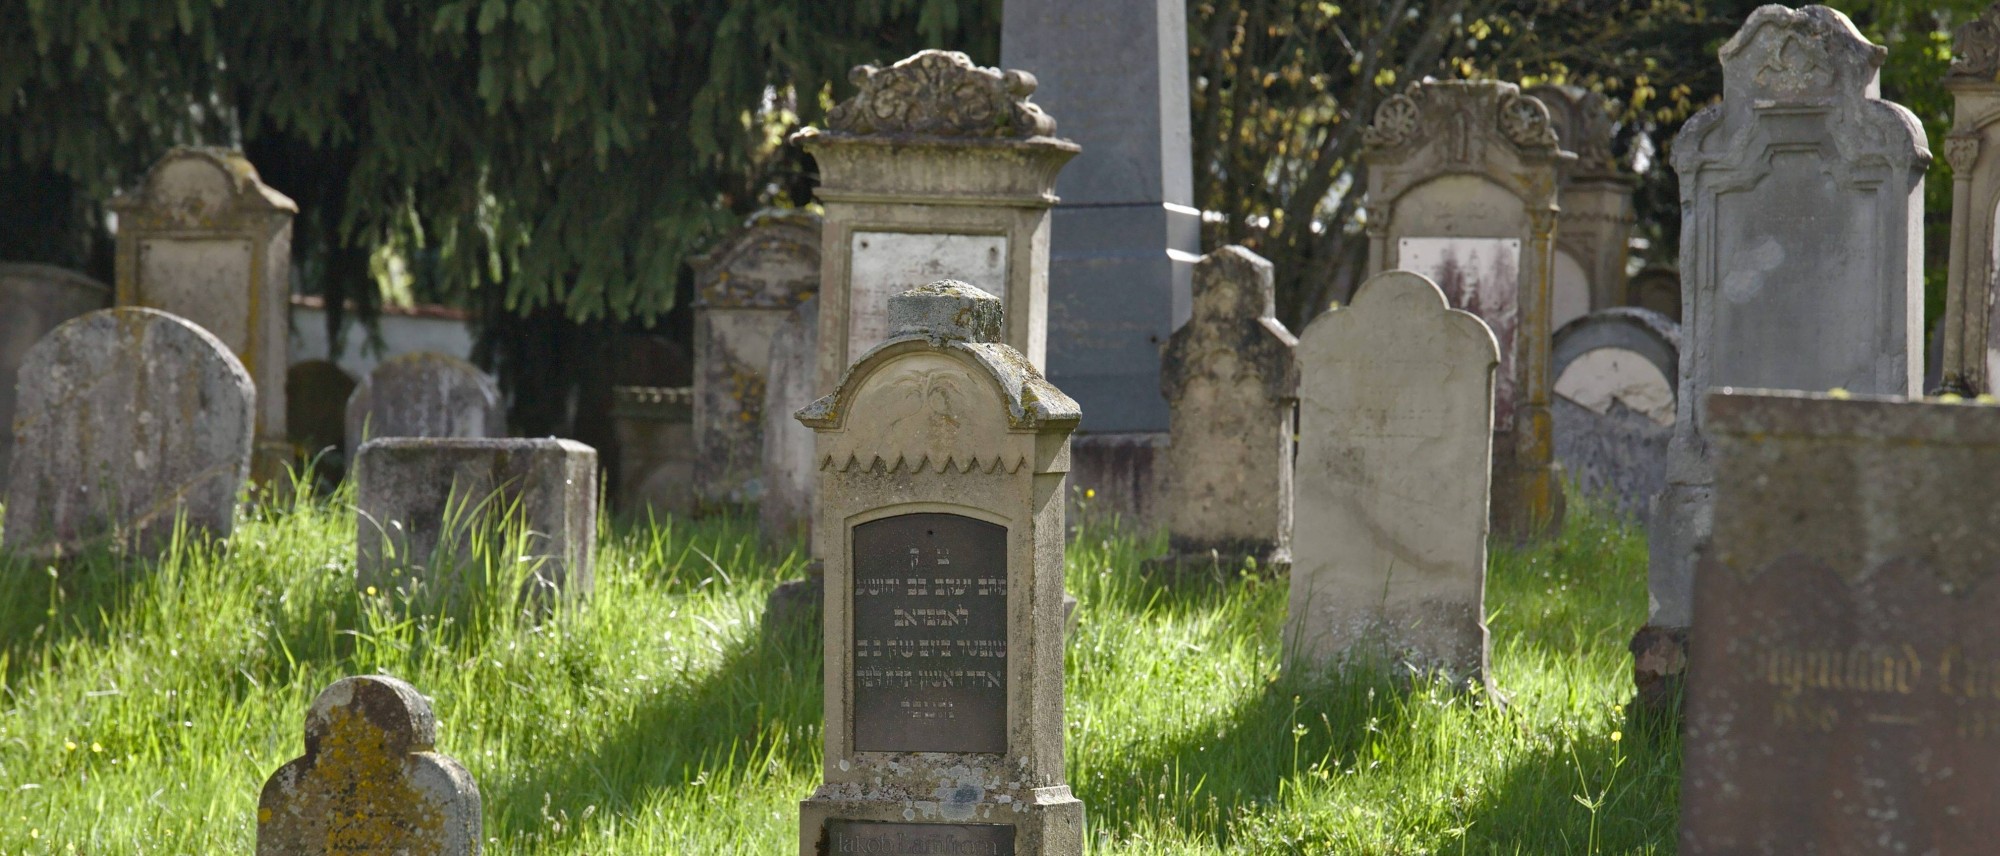 Grabsteine mit hebräischen und deutschen Inschriften auf dem jüdischen Friedhof in Buttenwiesen. Führt zur Unterseite „Buttenwiesen“.